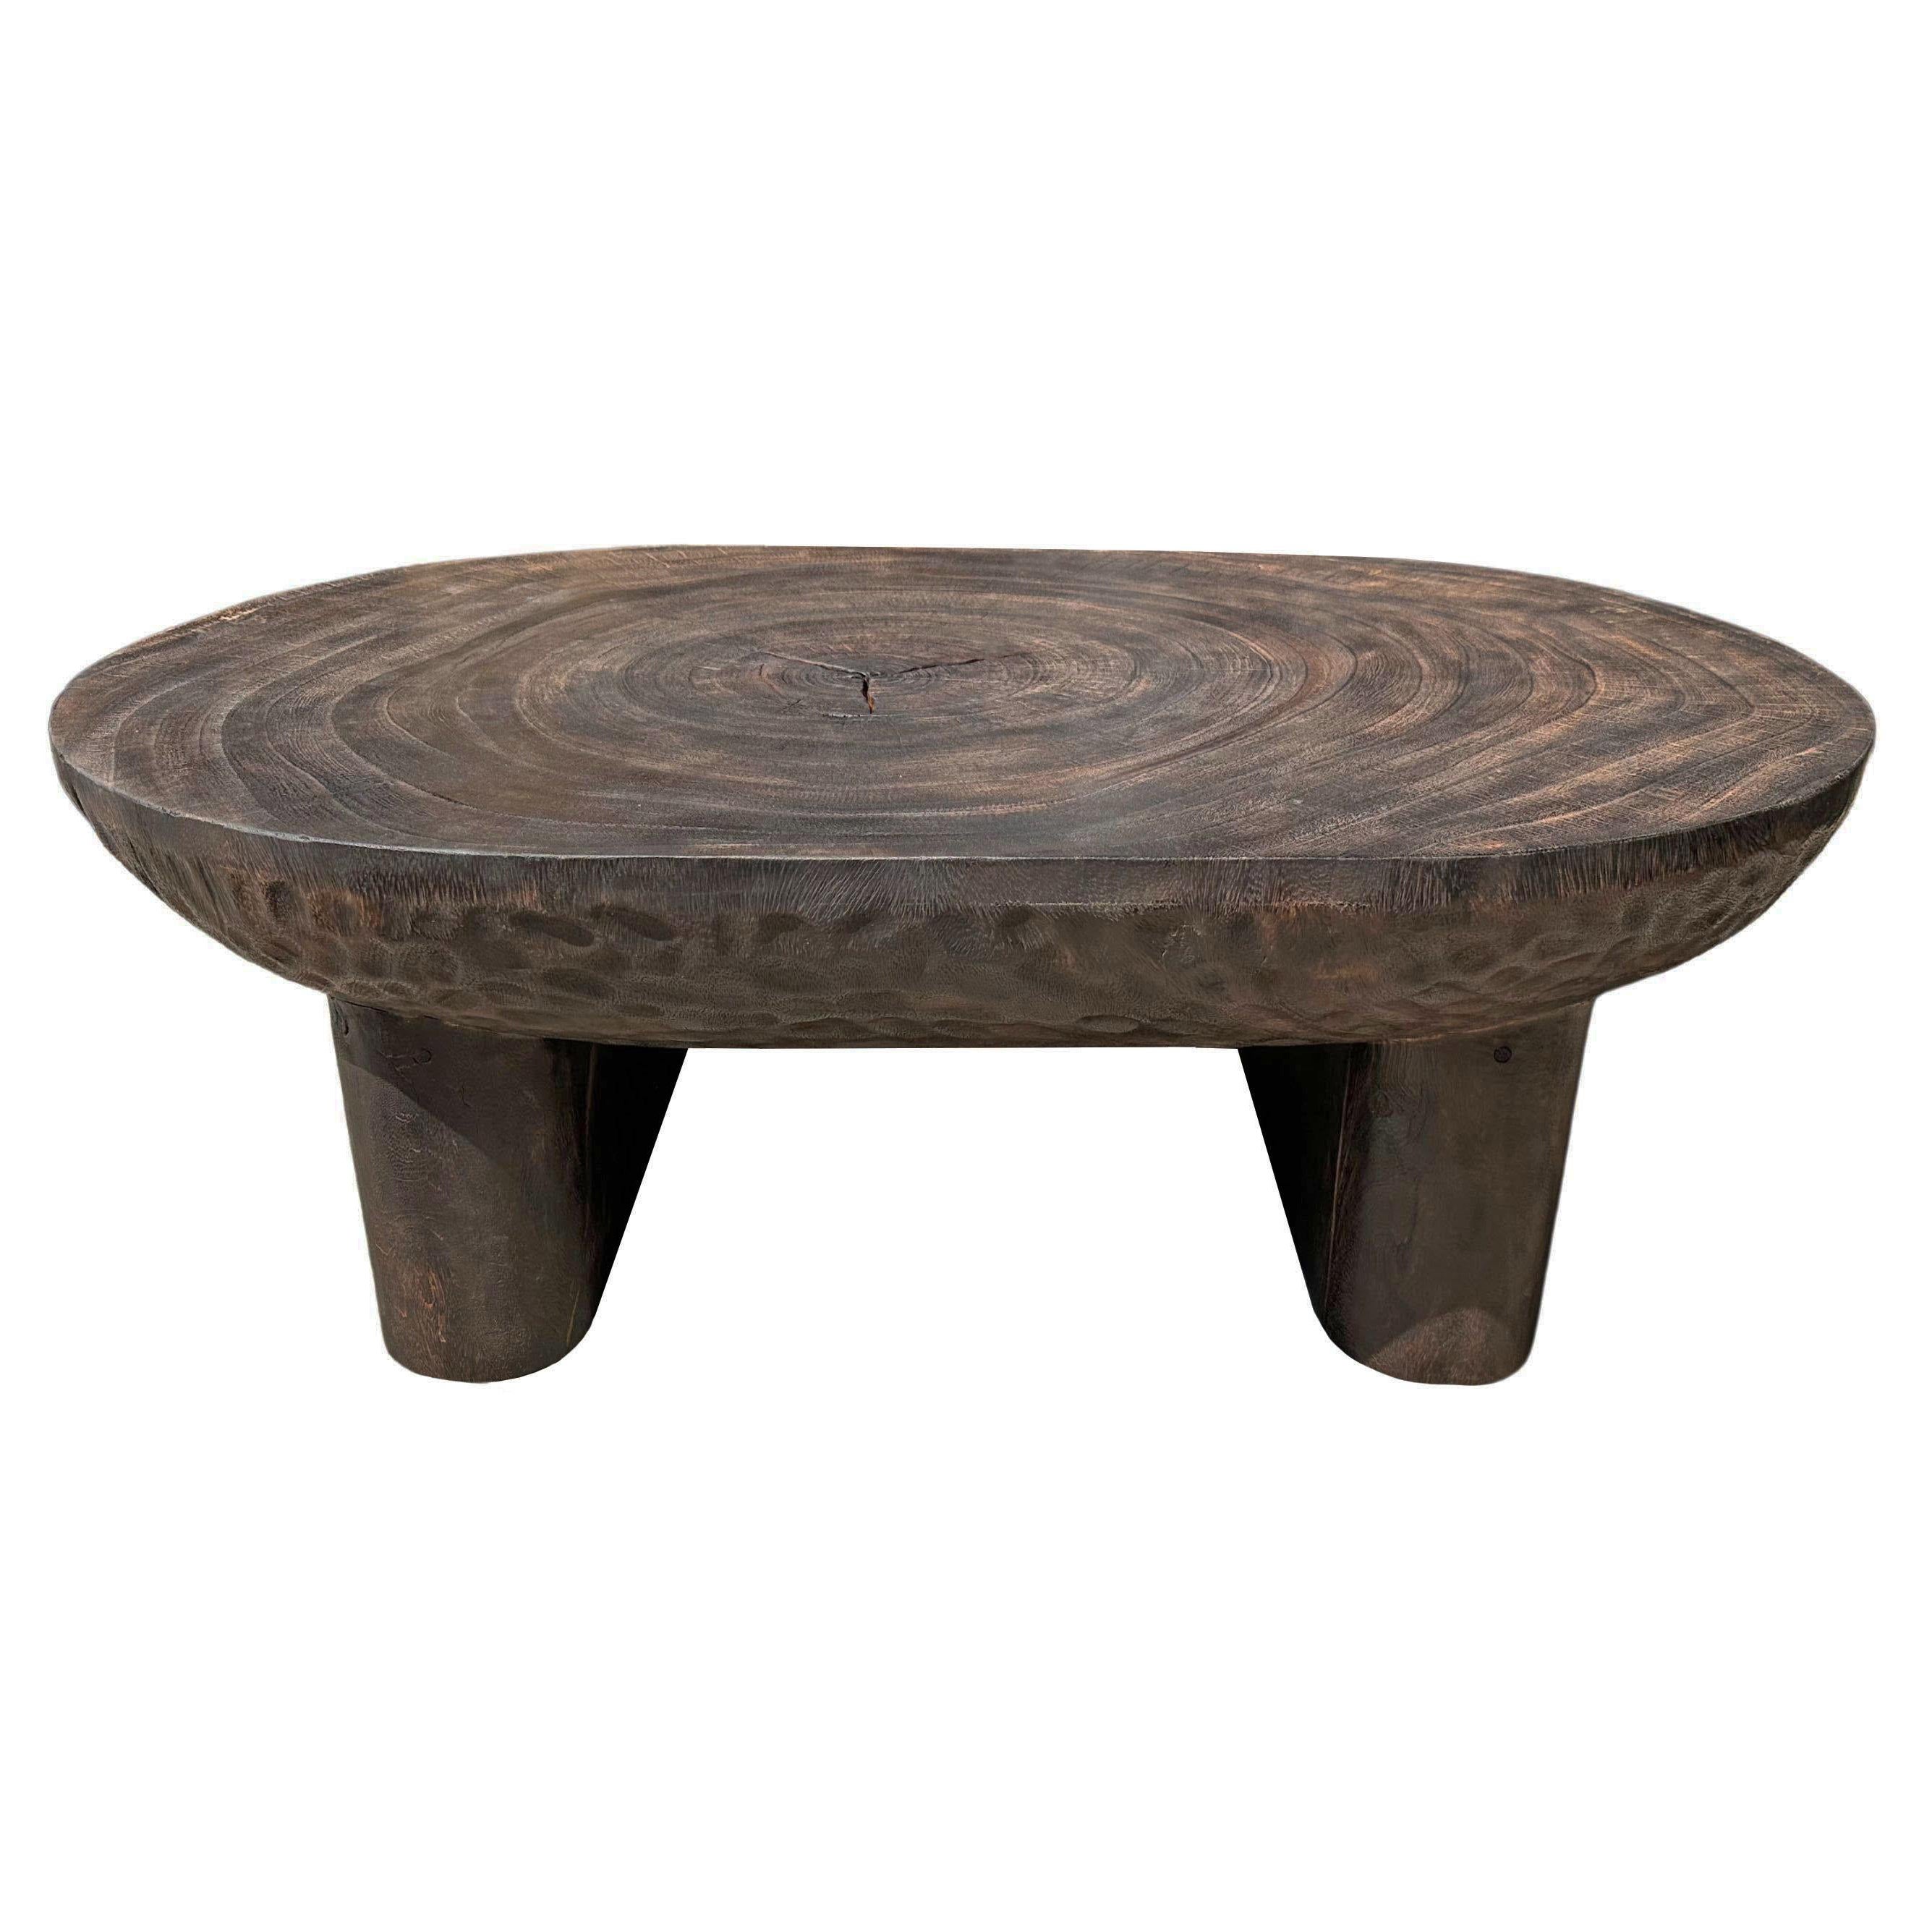 Table en bois suar finition organique soufflée à la main finition Espresso, moderne